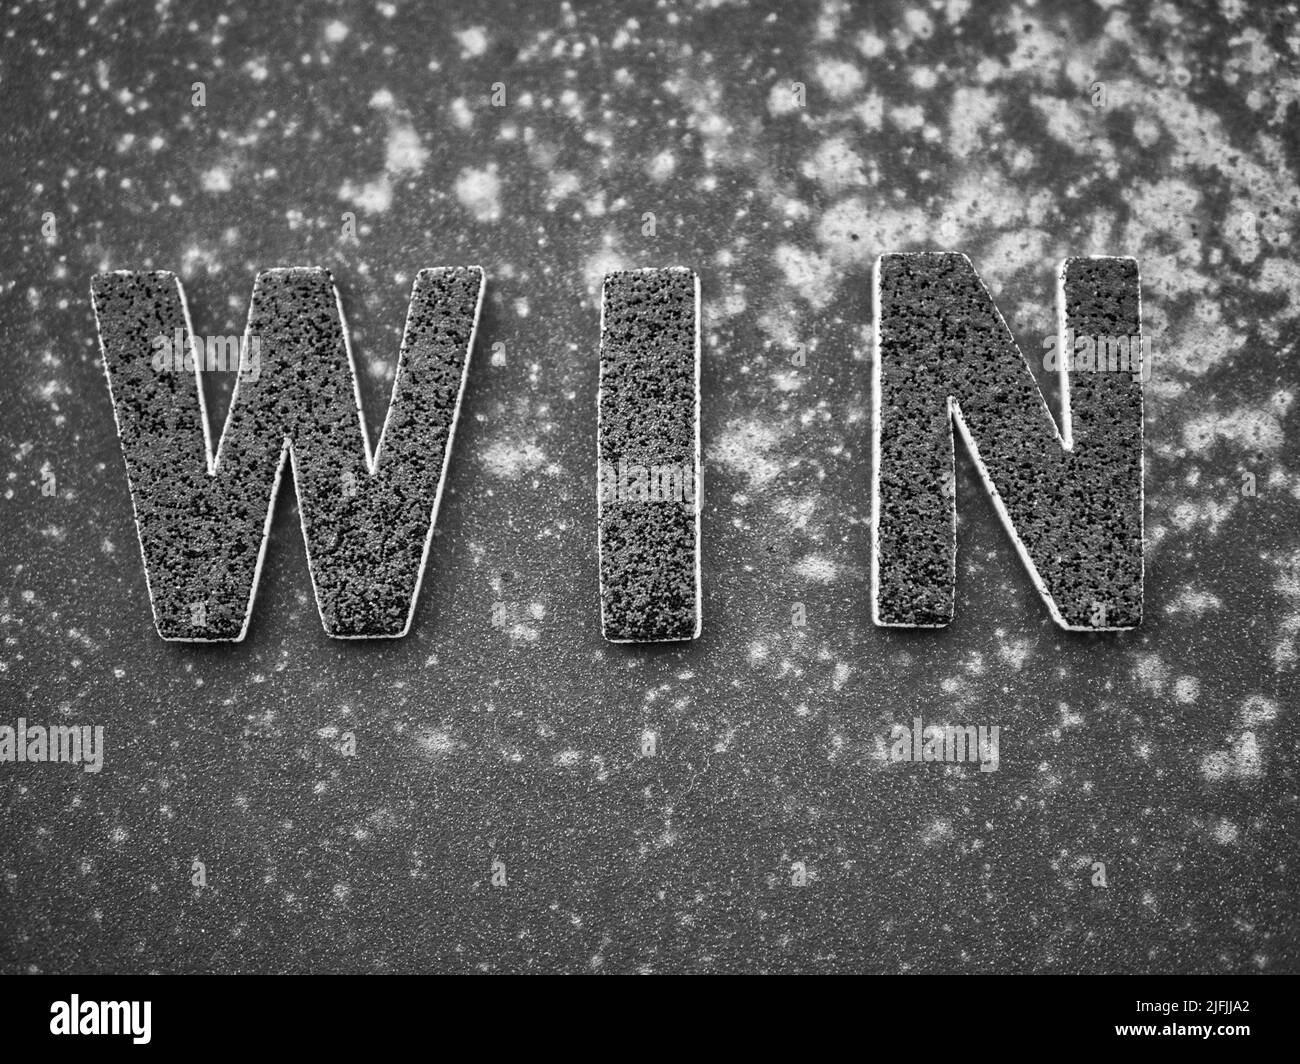 La parola 'Win' in lettere nere su una superficie di metallo arrugginita nera. Foto Stock